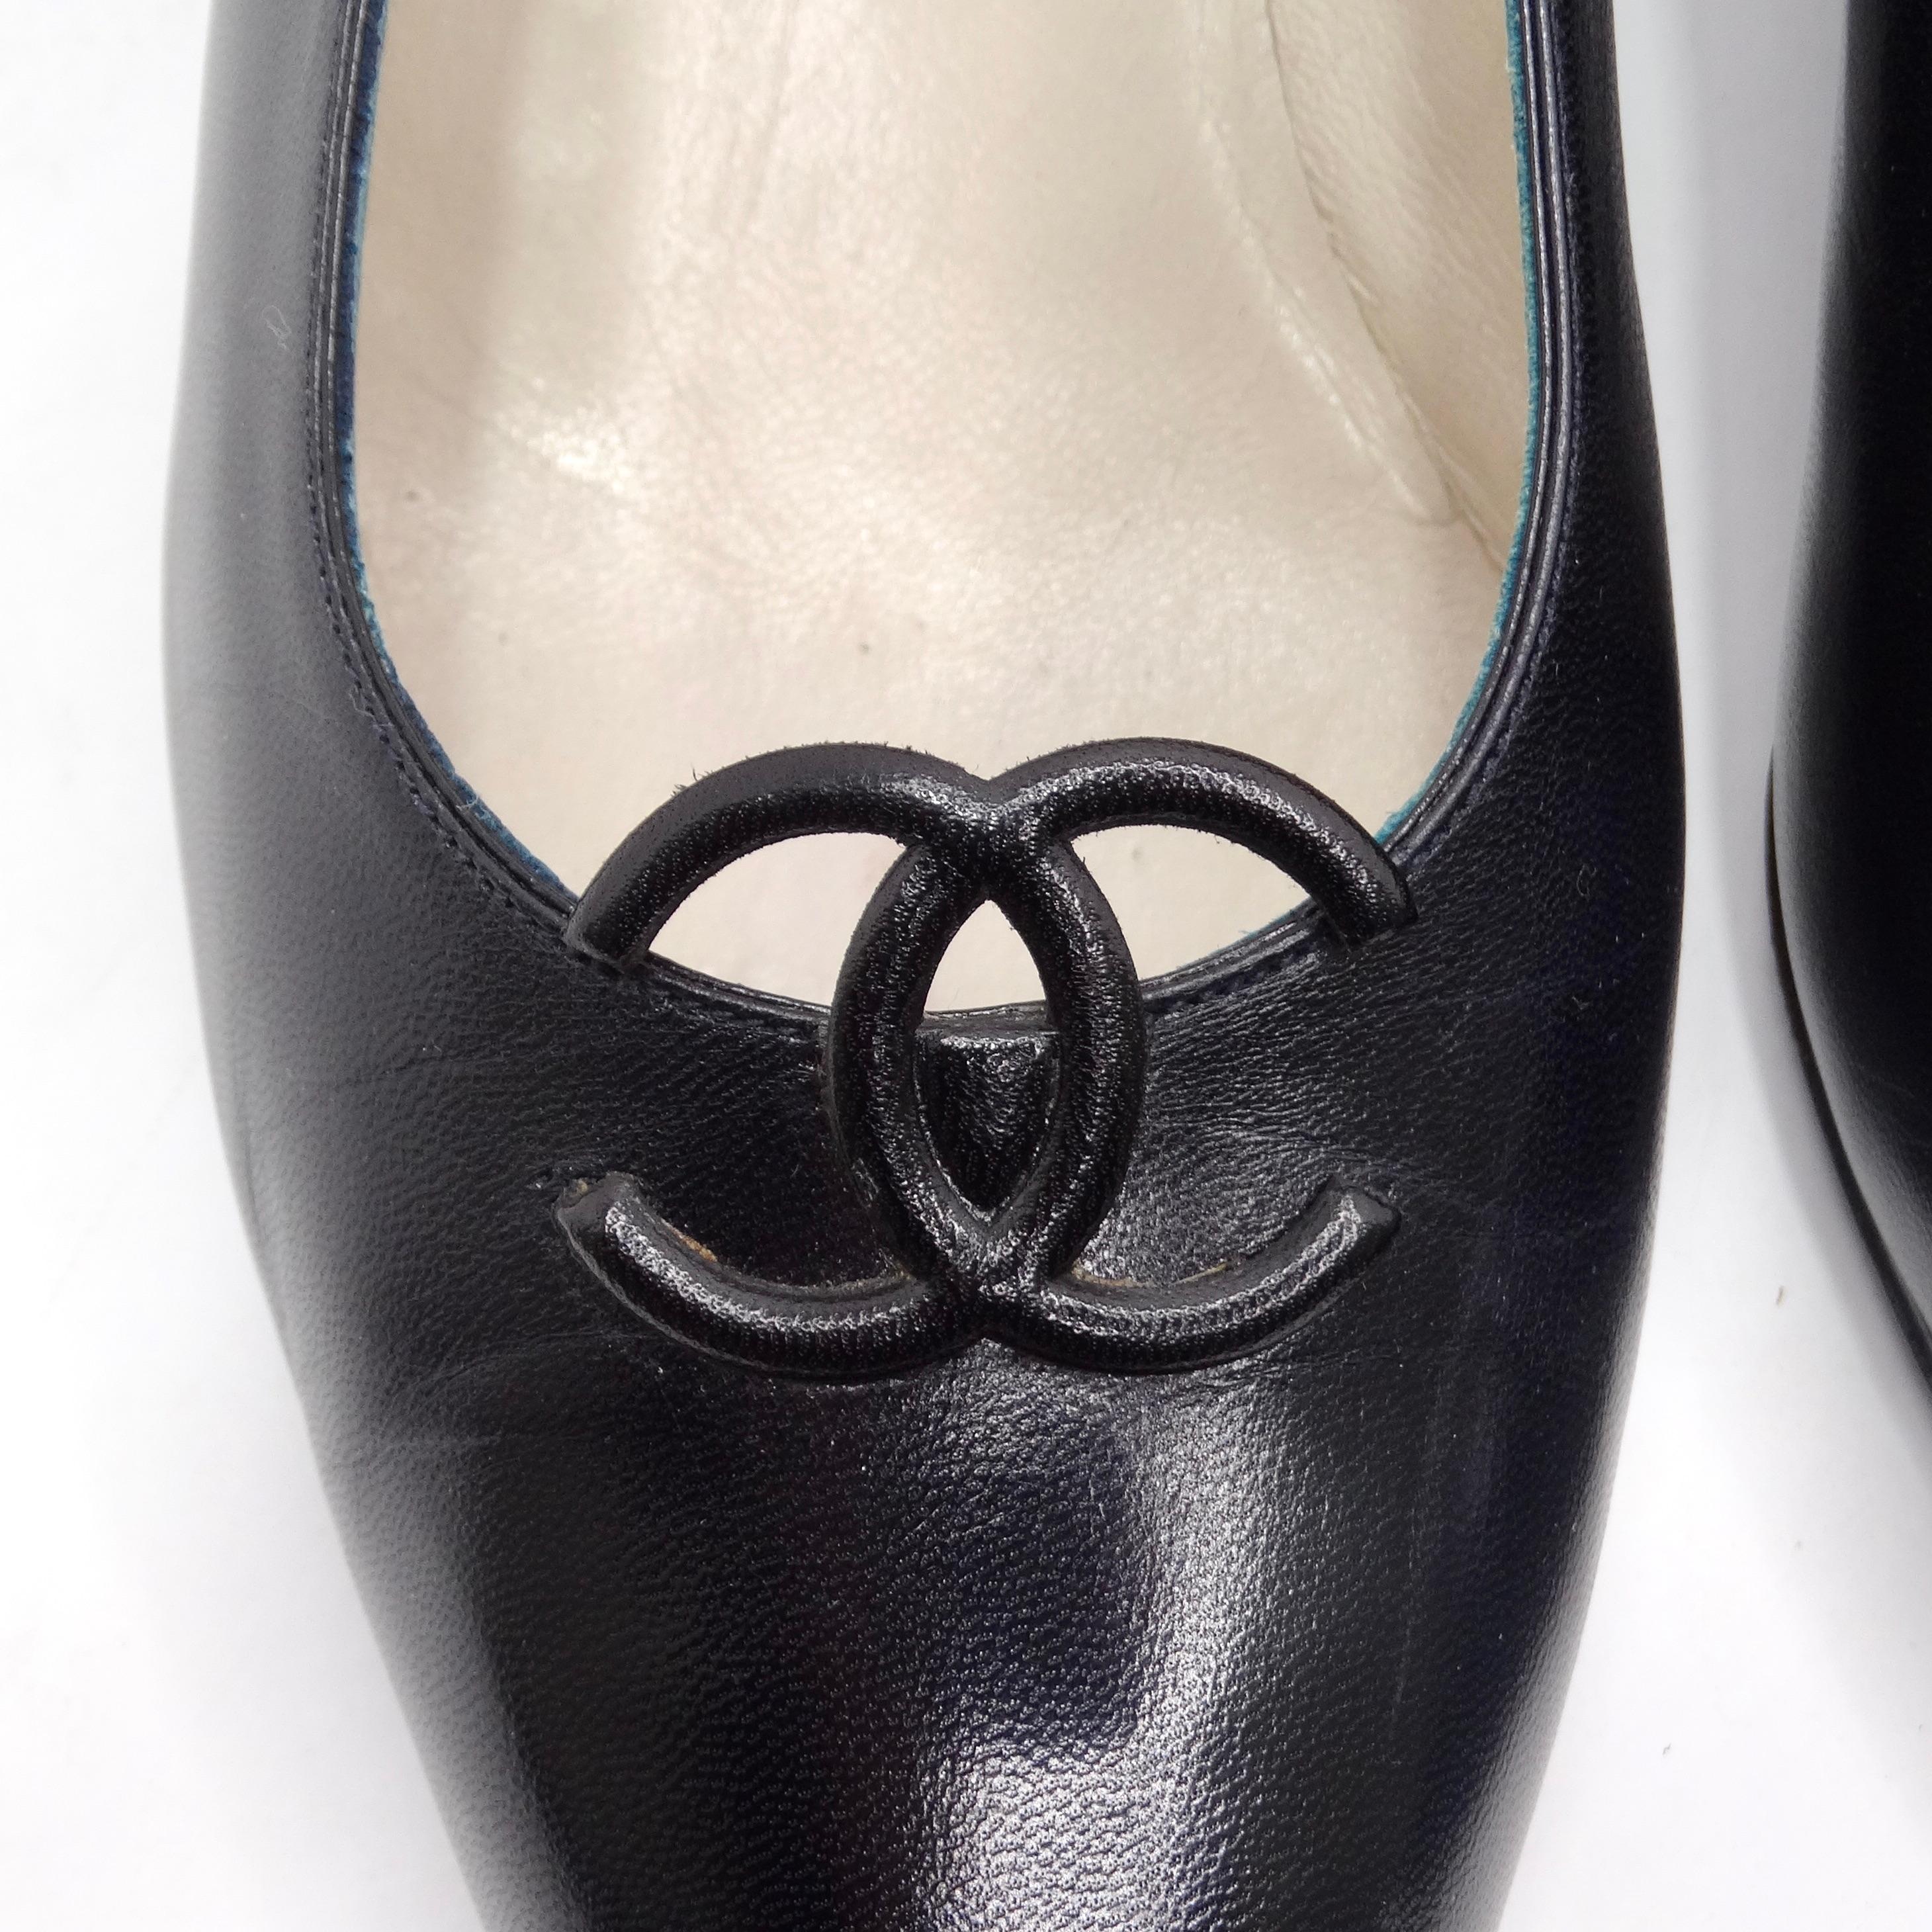 Voici les Chanel 1980 CC Black Leather Kitten Heels - une incarnation de l'élégance intemporelle et du luxe discret. Ces chaussures classiques à talons pointus en cuir lisse noir sont un complément polyvalent et chic à toute garde-robe, parfaites